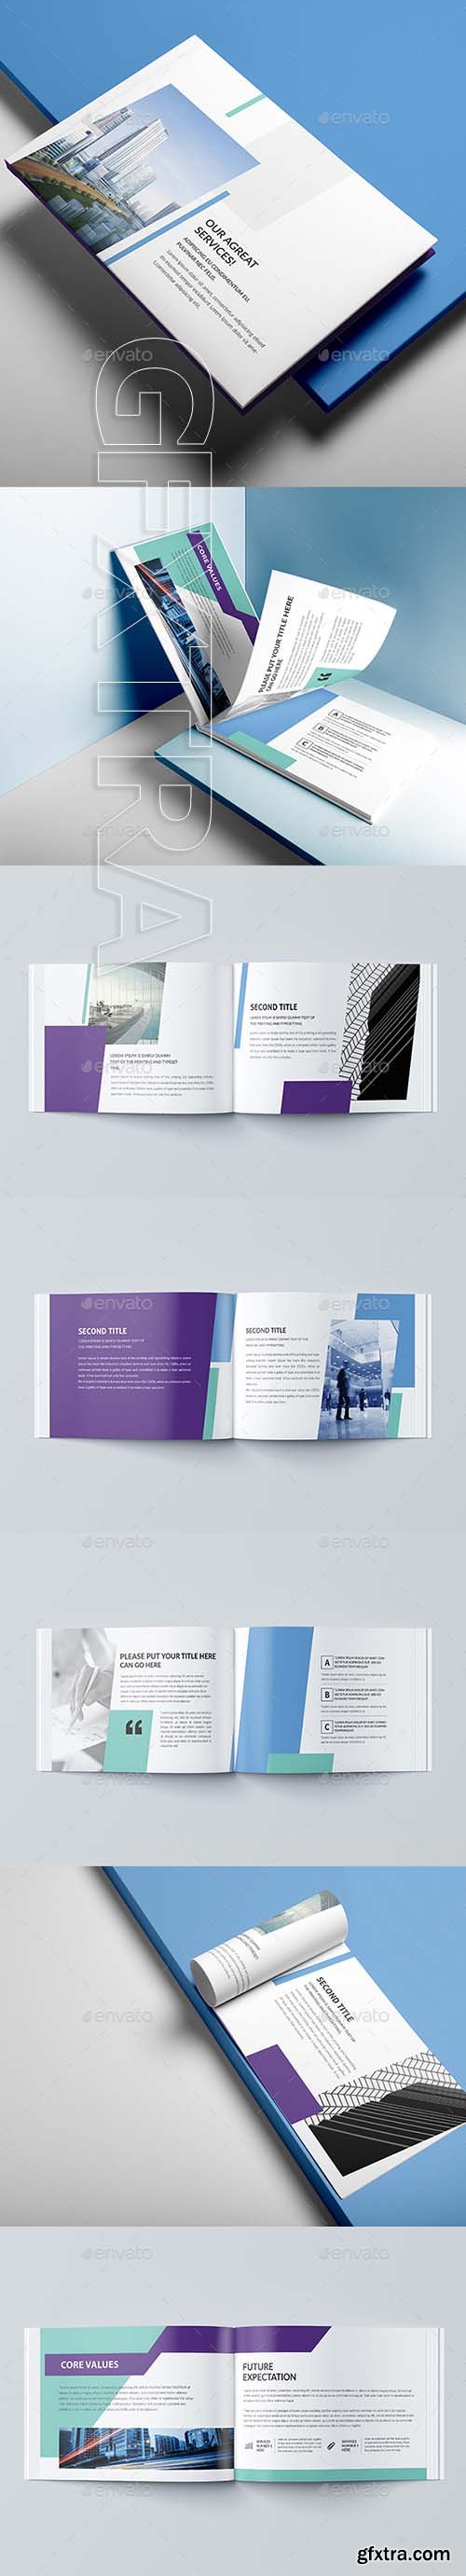 GraphicRiver - Minimal Architecture Brochure 21253817